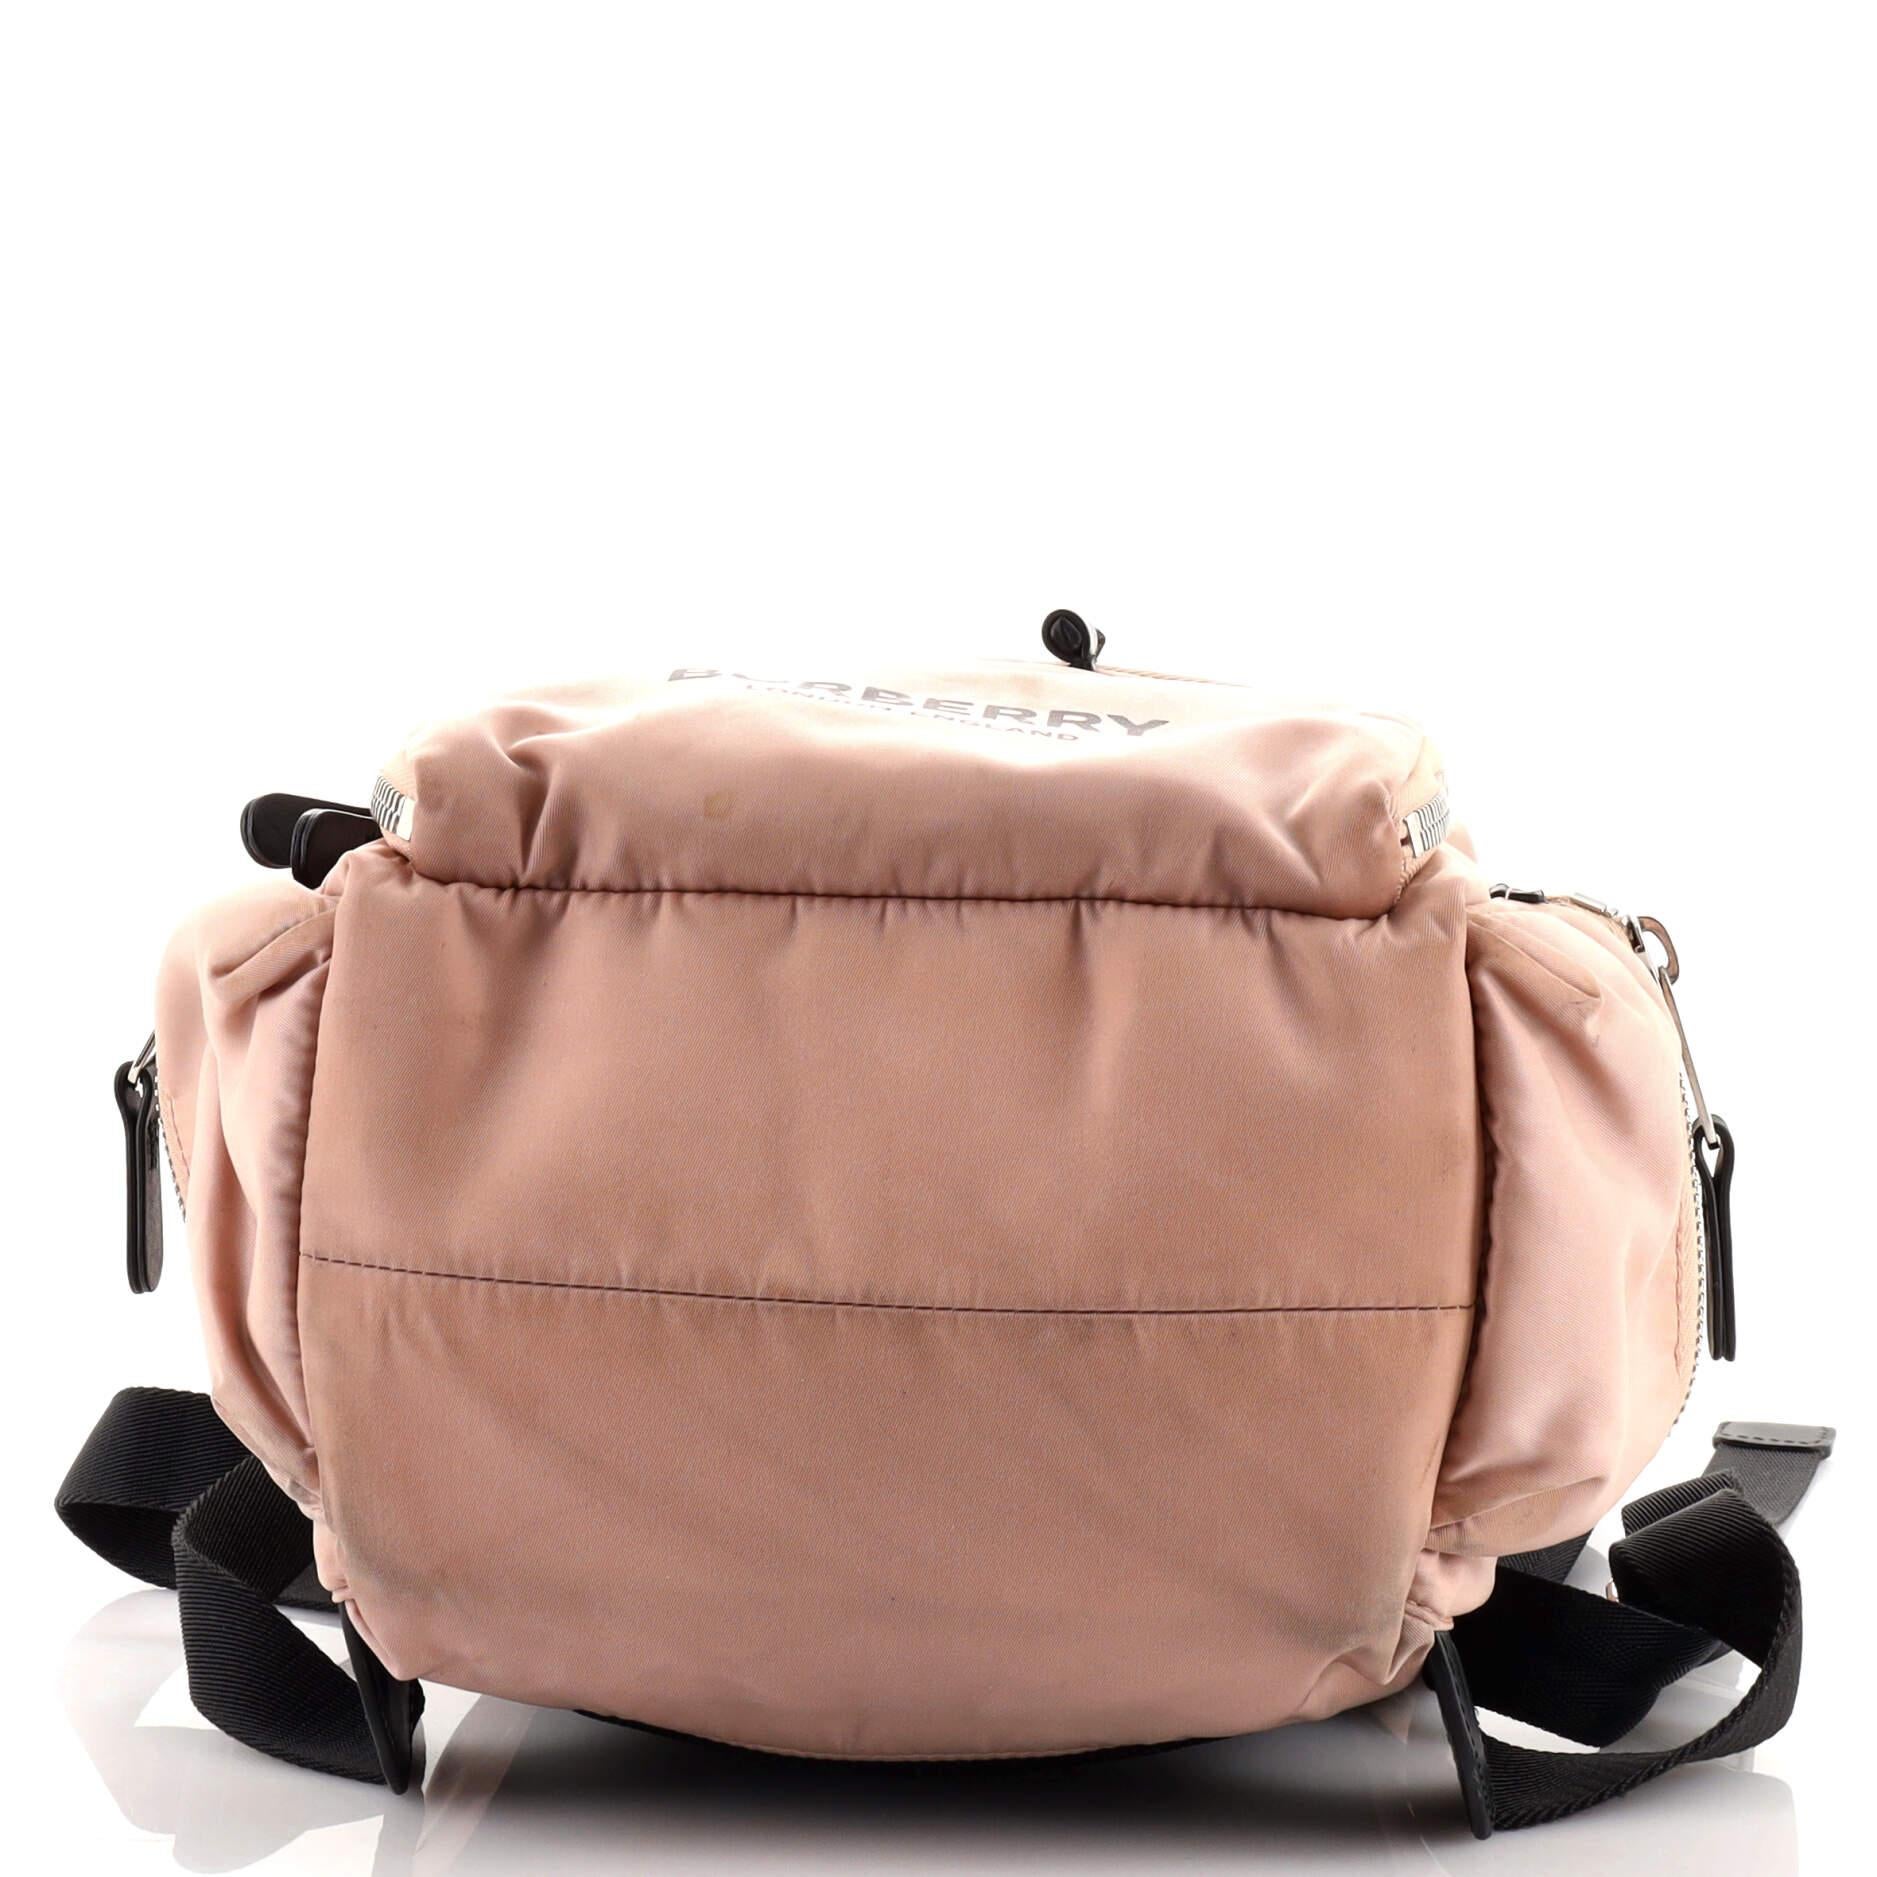 burberry drifton backpack